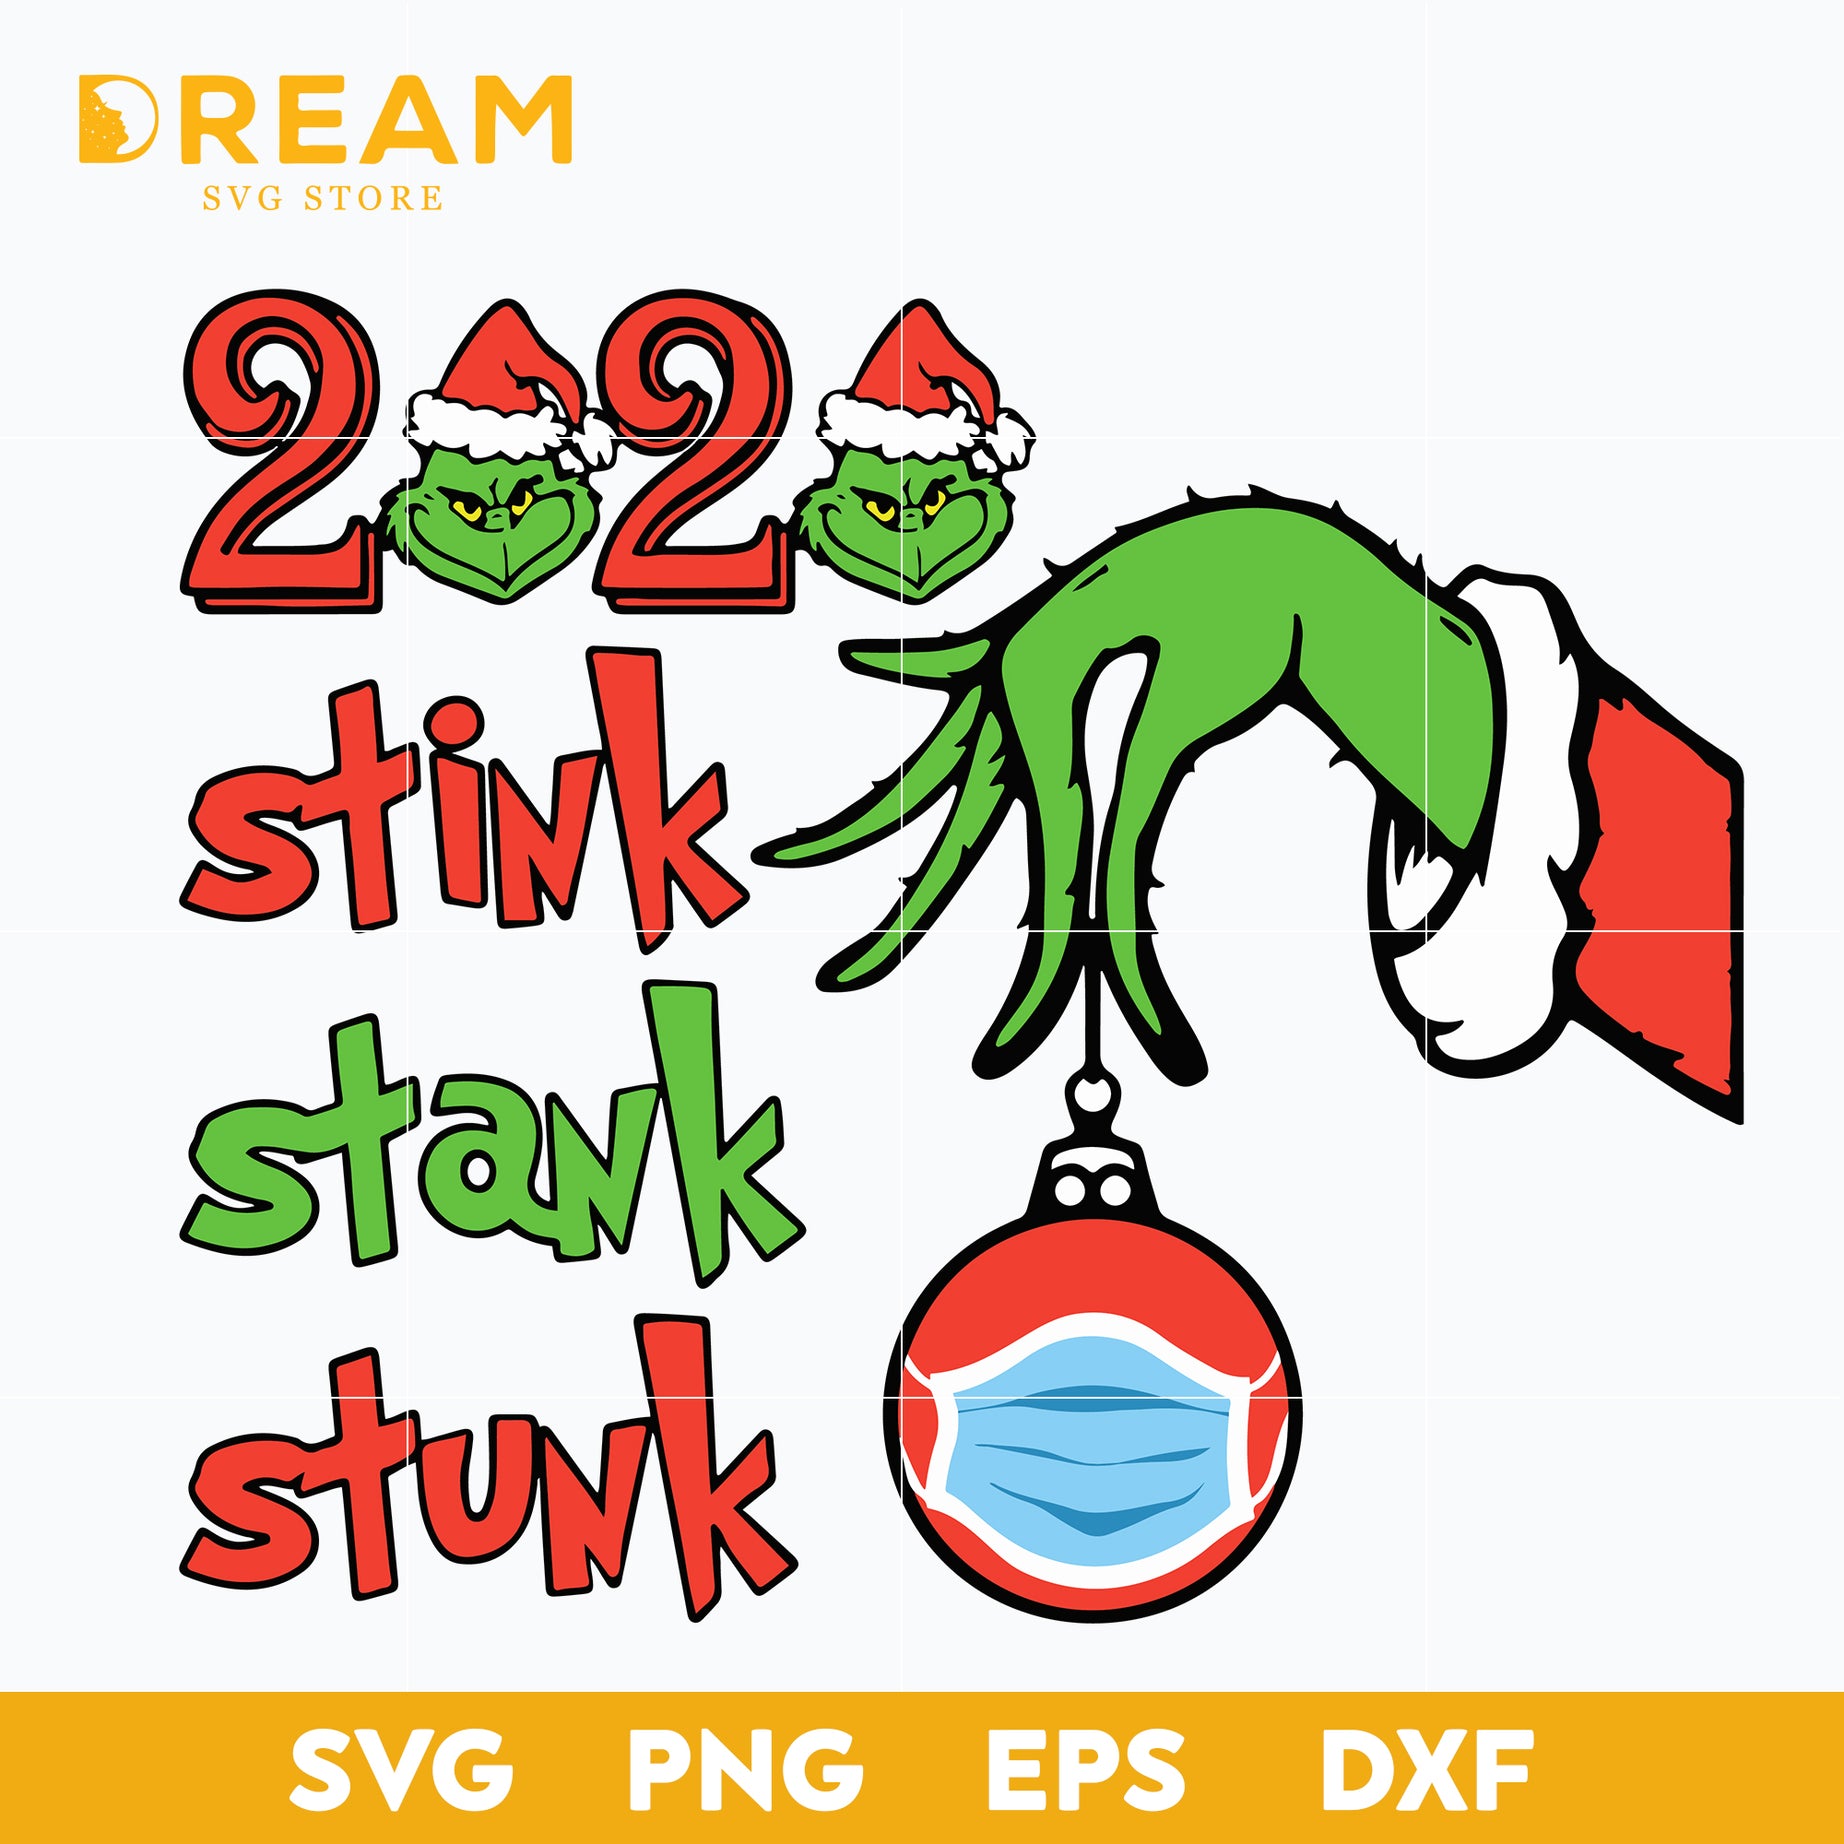 2020 stink stank stunk grinch svg,Christmas svg, png, dxf, eps digital file CRM11112012L